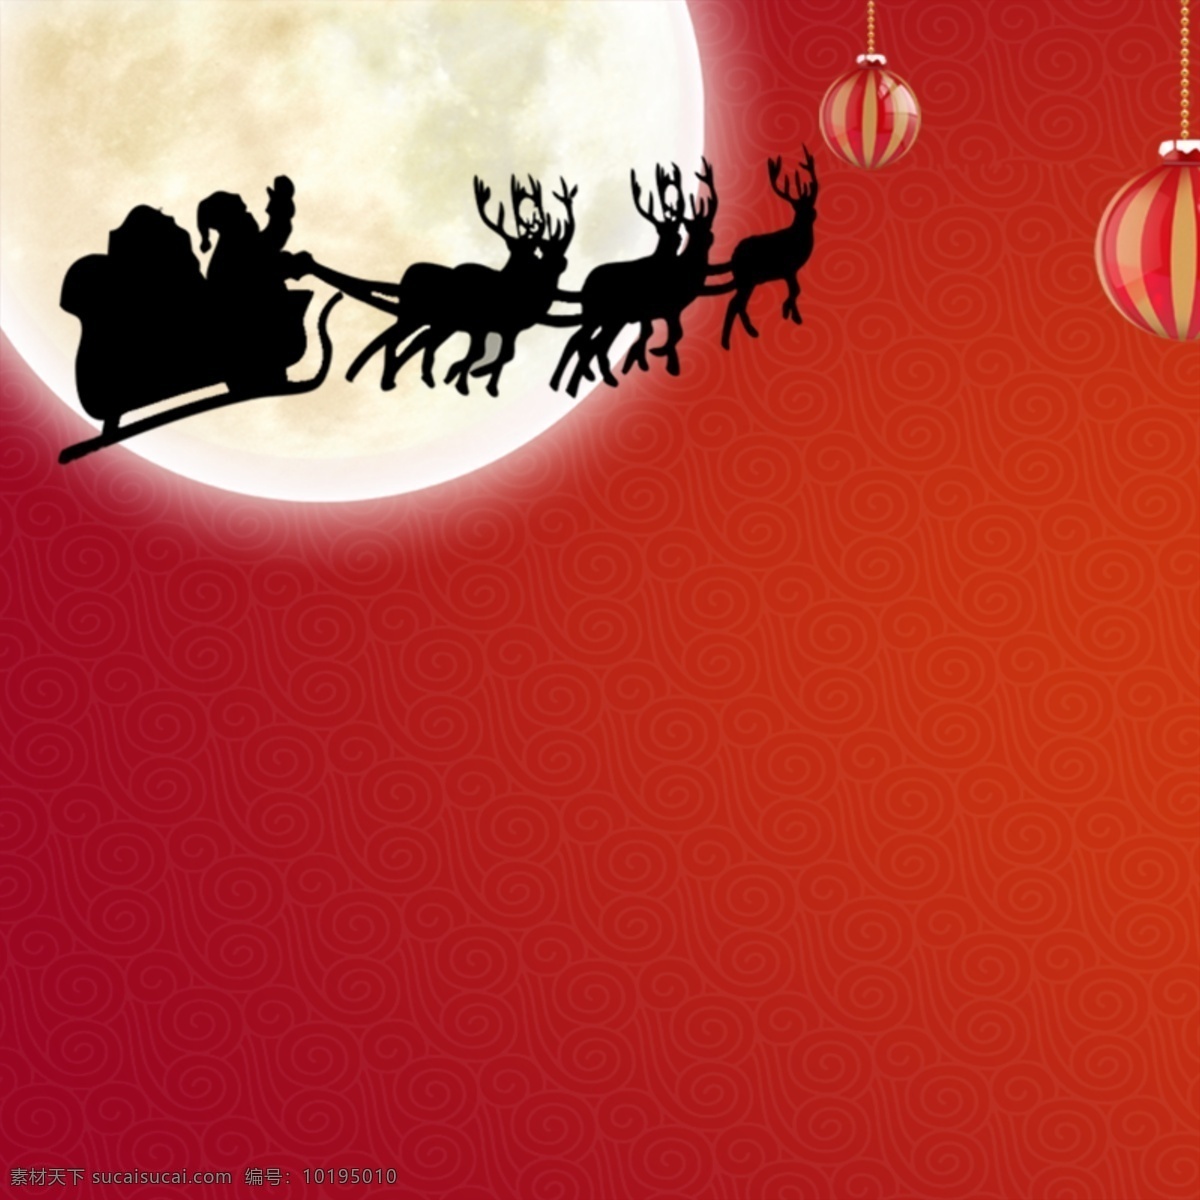 欢乐圣诞 礼盒 庆圣诞 圣诞节 圣诞节背景 圣诞节海报 圣诞节展架 圣诞快乐 圣诞 节展架 圣诞特惠 放射光 光线 圣诞驯鹿 圣诞树 红色